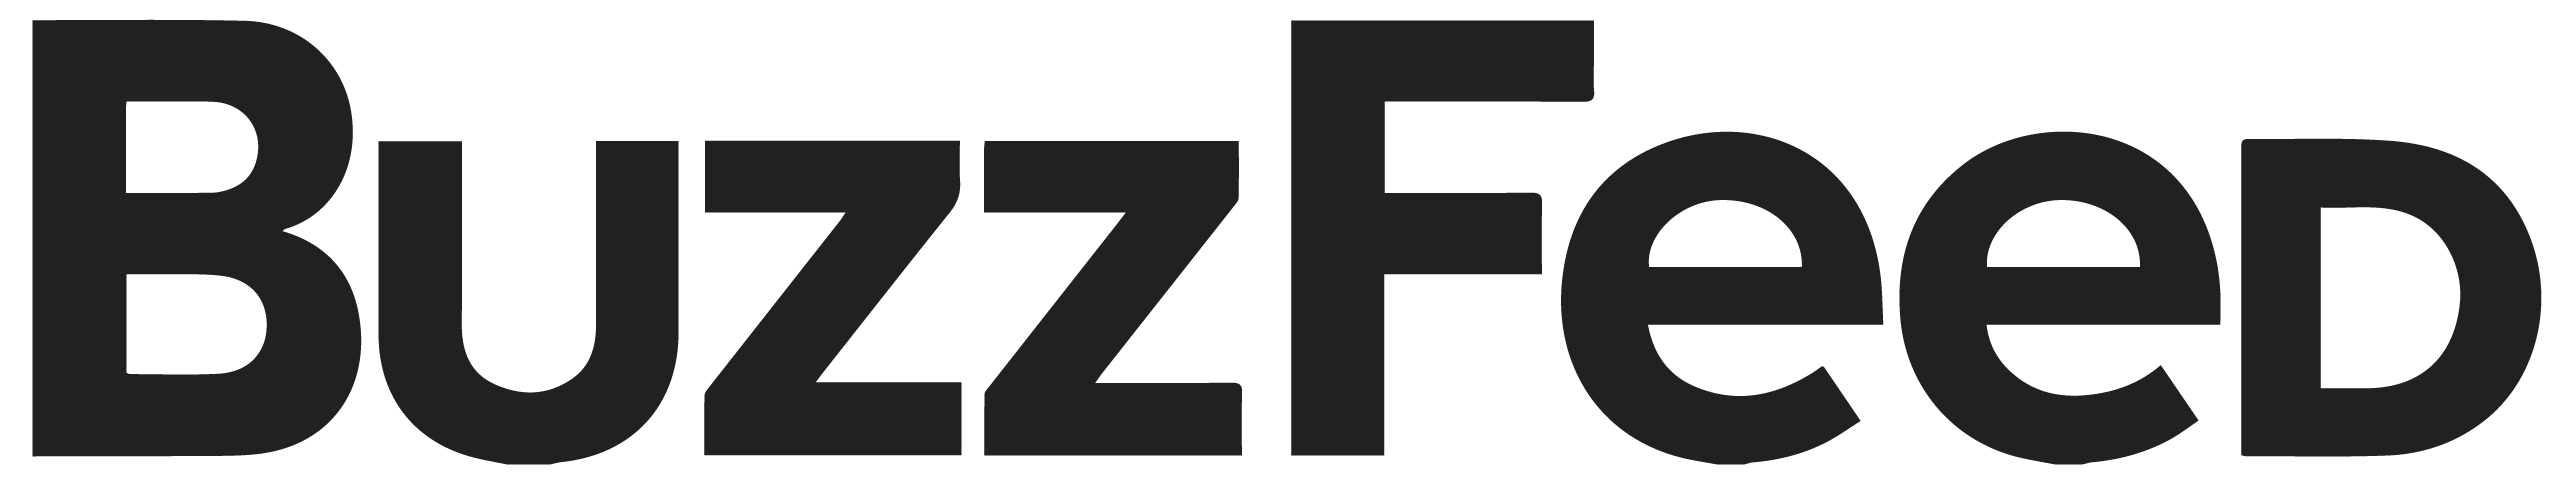 BuzzFeed Logo - Buzzfeed Logo Red PR